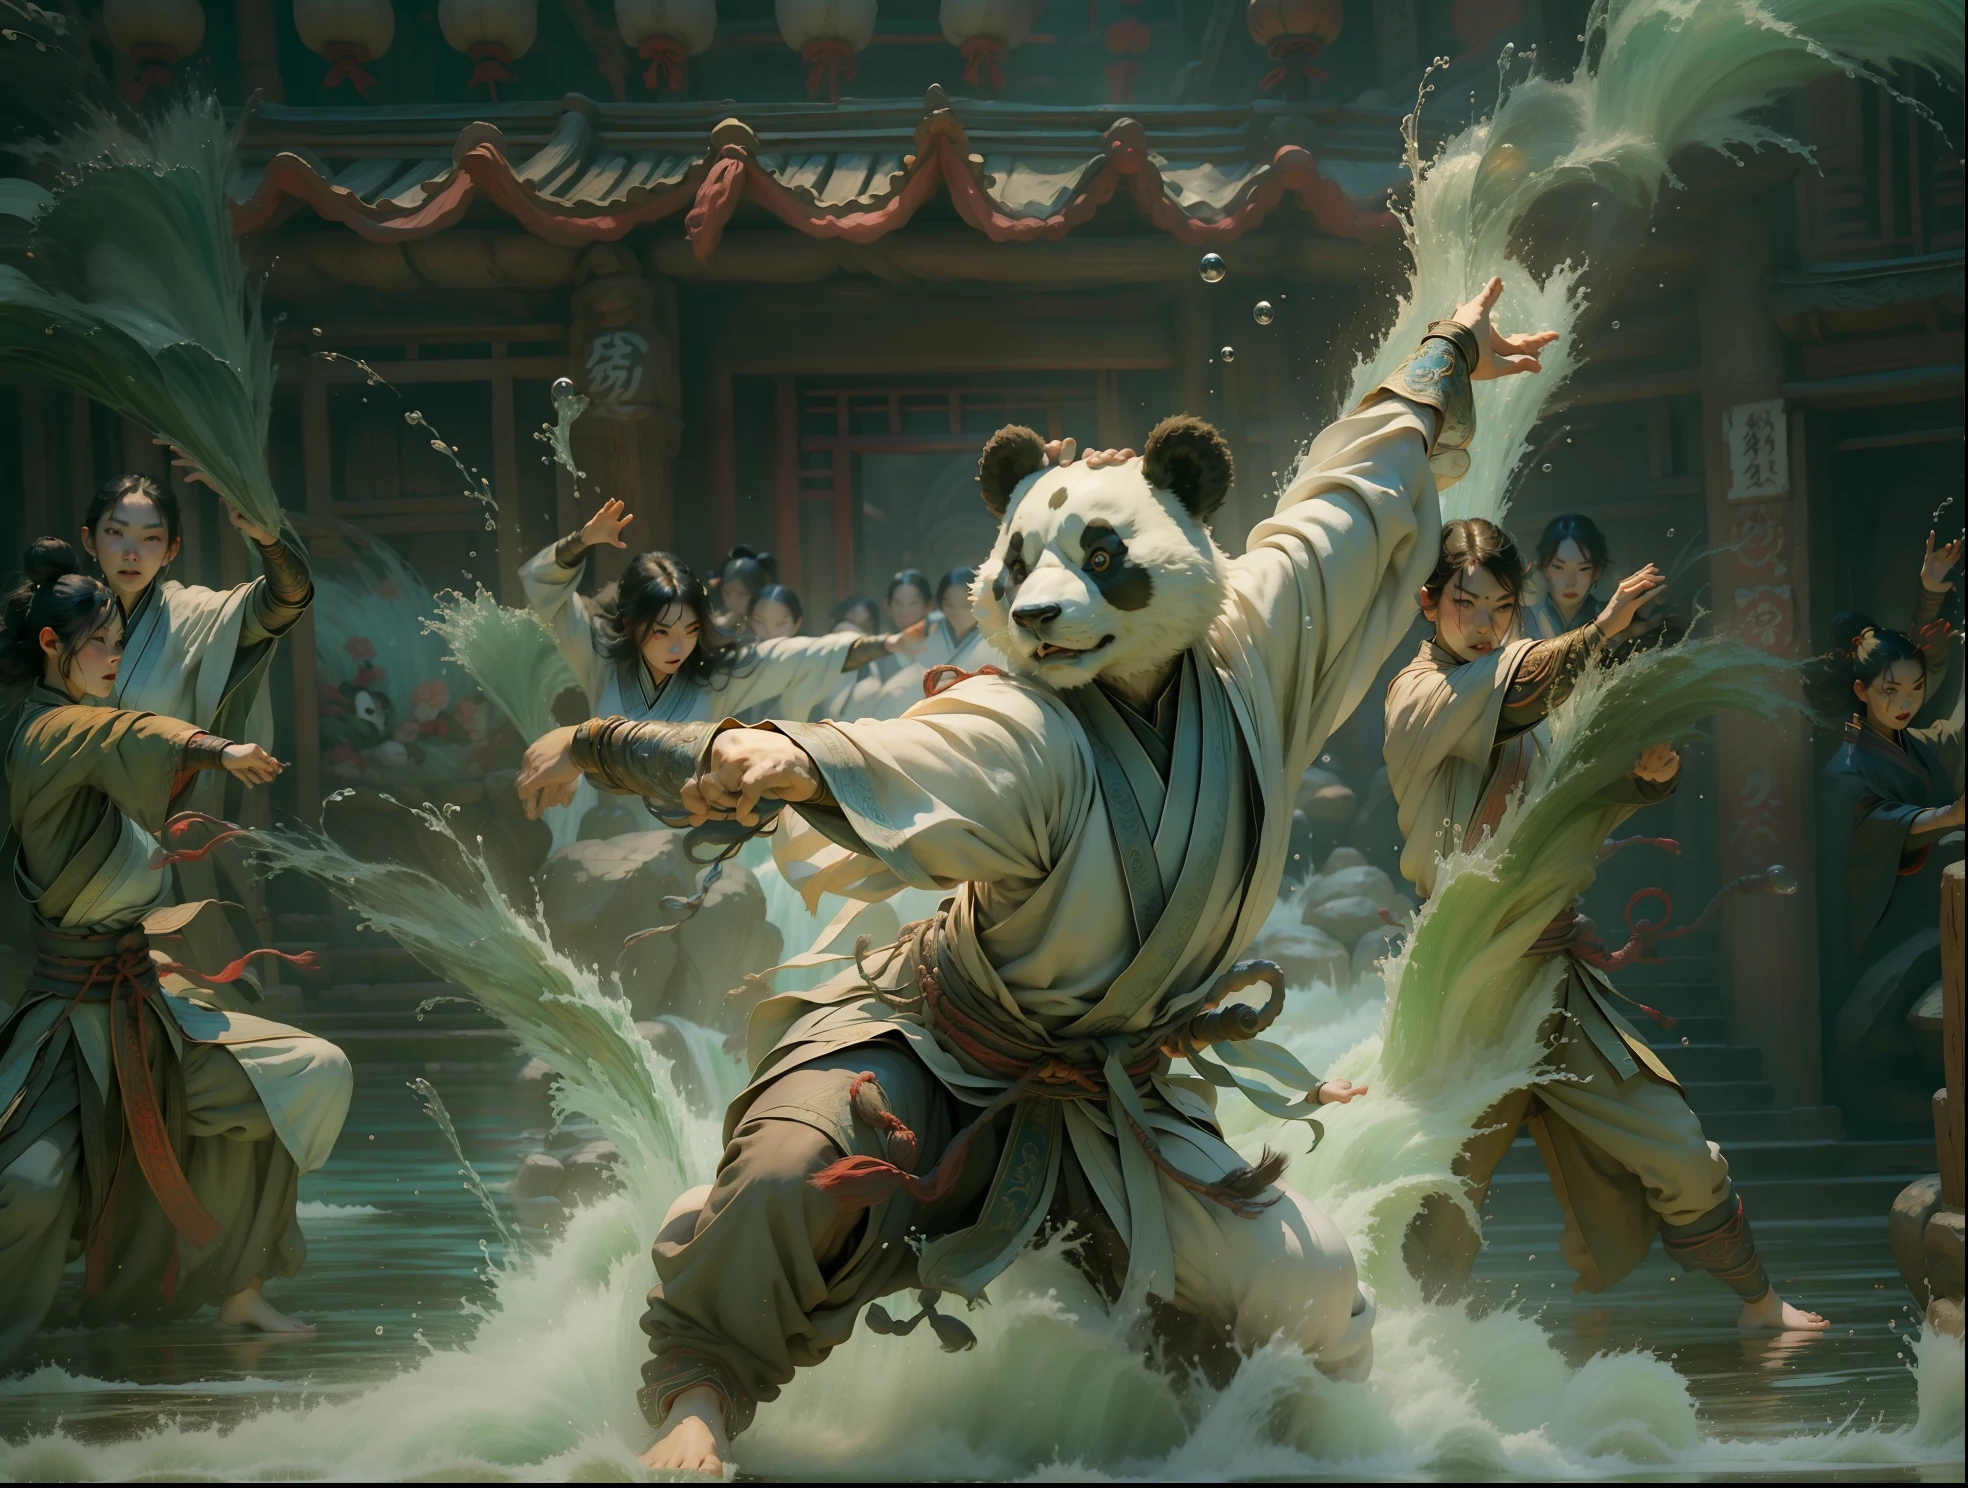 Una escena de artes marciales chinas que muestra un panda controlando el agua con kung fu y tai chi., con salpicaduras de agua, ondas, y energía mágica.

atmósfera lúdica, colores vibrantes, composición dinámica, Canon EOS R5 camera, Fujifilm Provia 100F film, lente de 50 mm, poca profundidad de campo, Jackie Chan, Donnie Yen, Jet Li, Alexander McQueen, Guo Pei